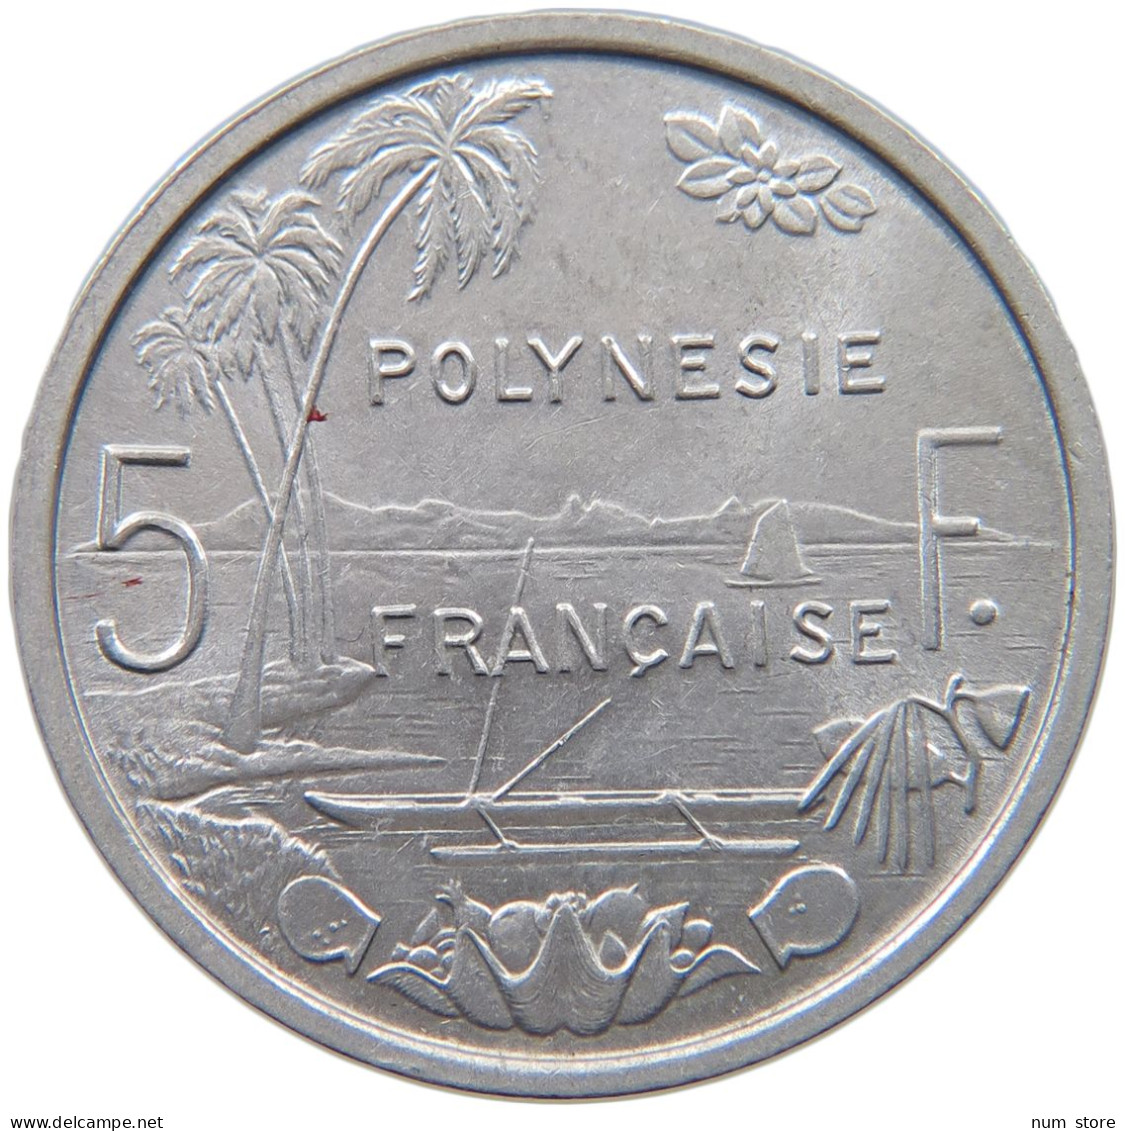 POLYNESIA 5 FRANCS 1965  #c001 0279 - Frans-Polynesië